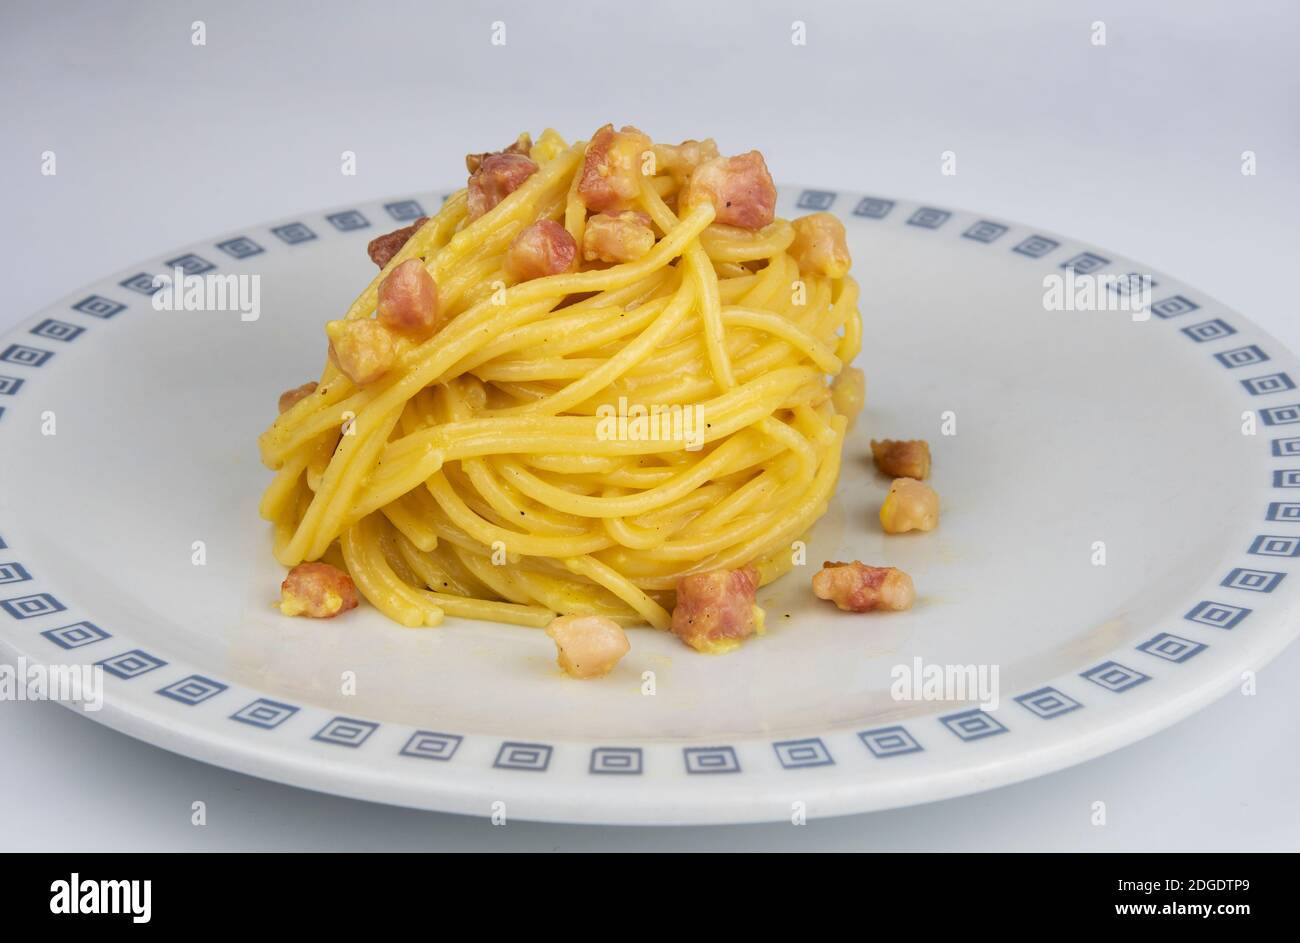 Spaghetti pâtes alla carbonara, un plat populaire à faire à la maison Banque D'Images